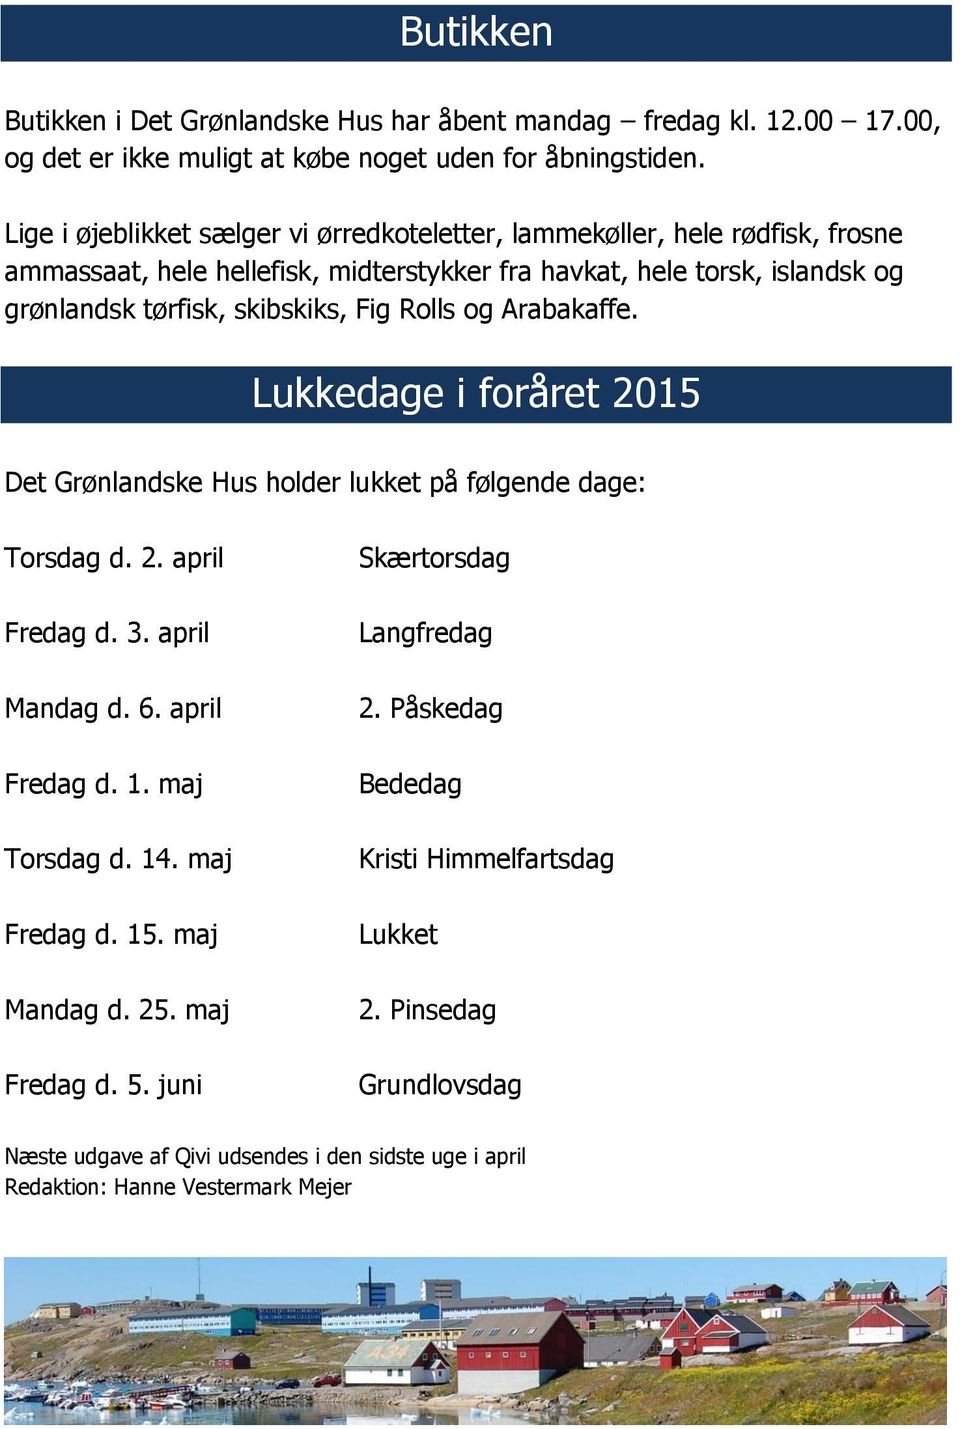 Rolls og Arabakaffe. Lukkedage i foråret 2015 Det Grønlandske Hus holder lukket på følgende dage: Torsdag d. 2. april Fredag d. 3. april Mandag d. 6. april Fredag d. 1. maj Torsdag d. 14.